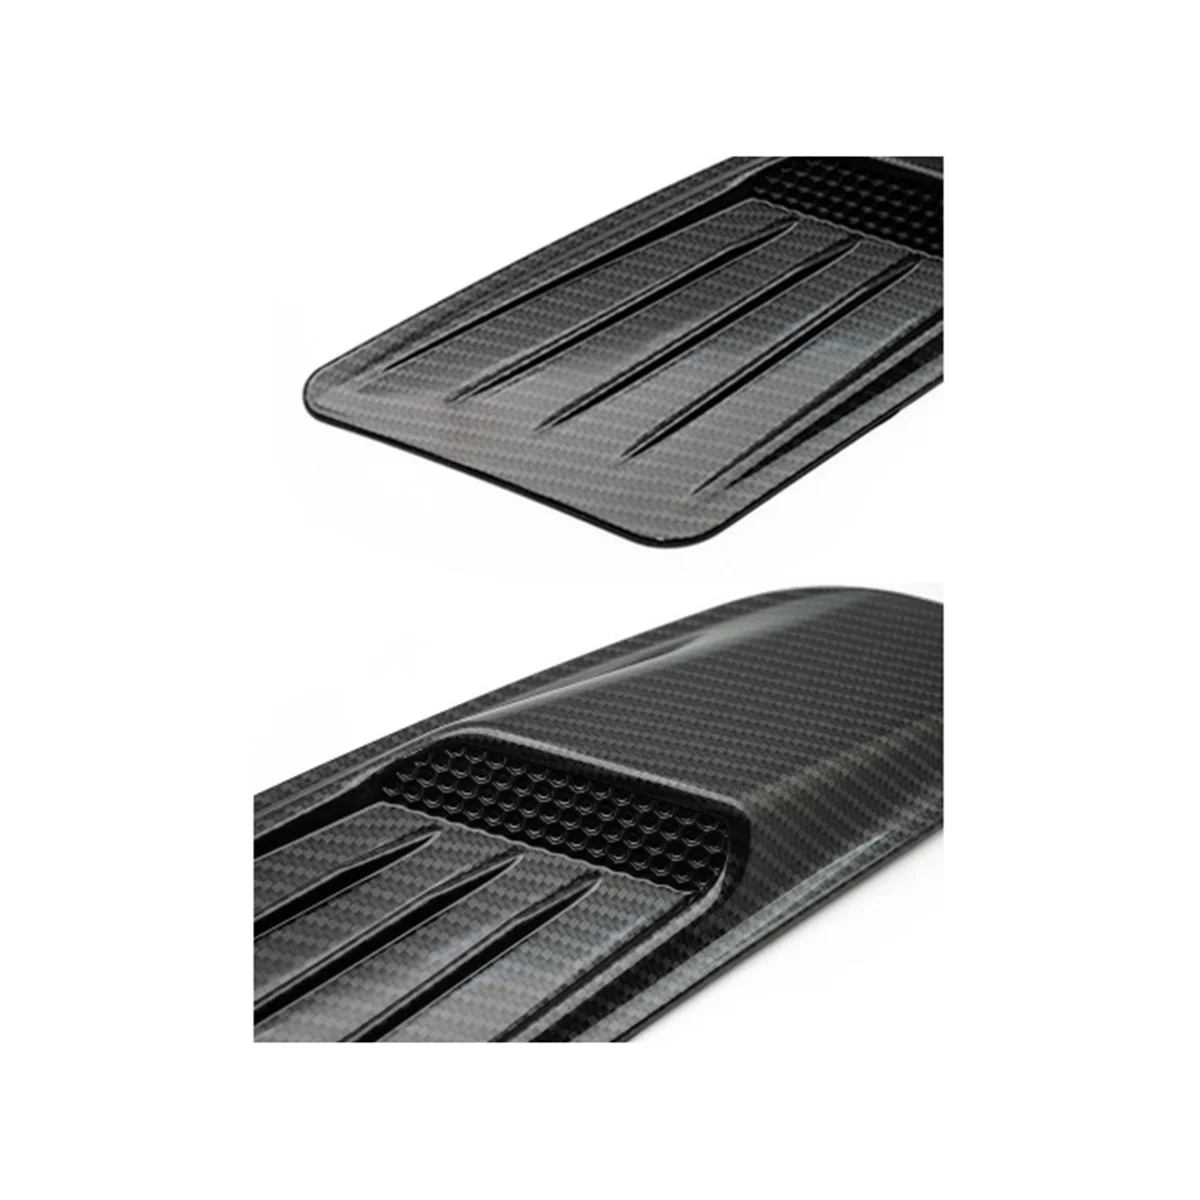 Новая модификация капота с фальшивым воздуховыпуском для Ford Mustang Piano Black, Универсальный воздуховыпуск для капота Изображение 1